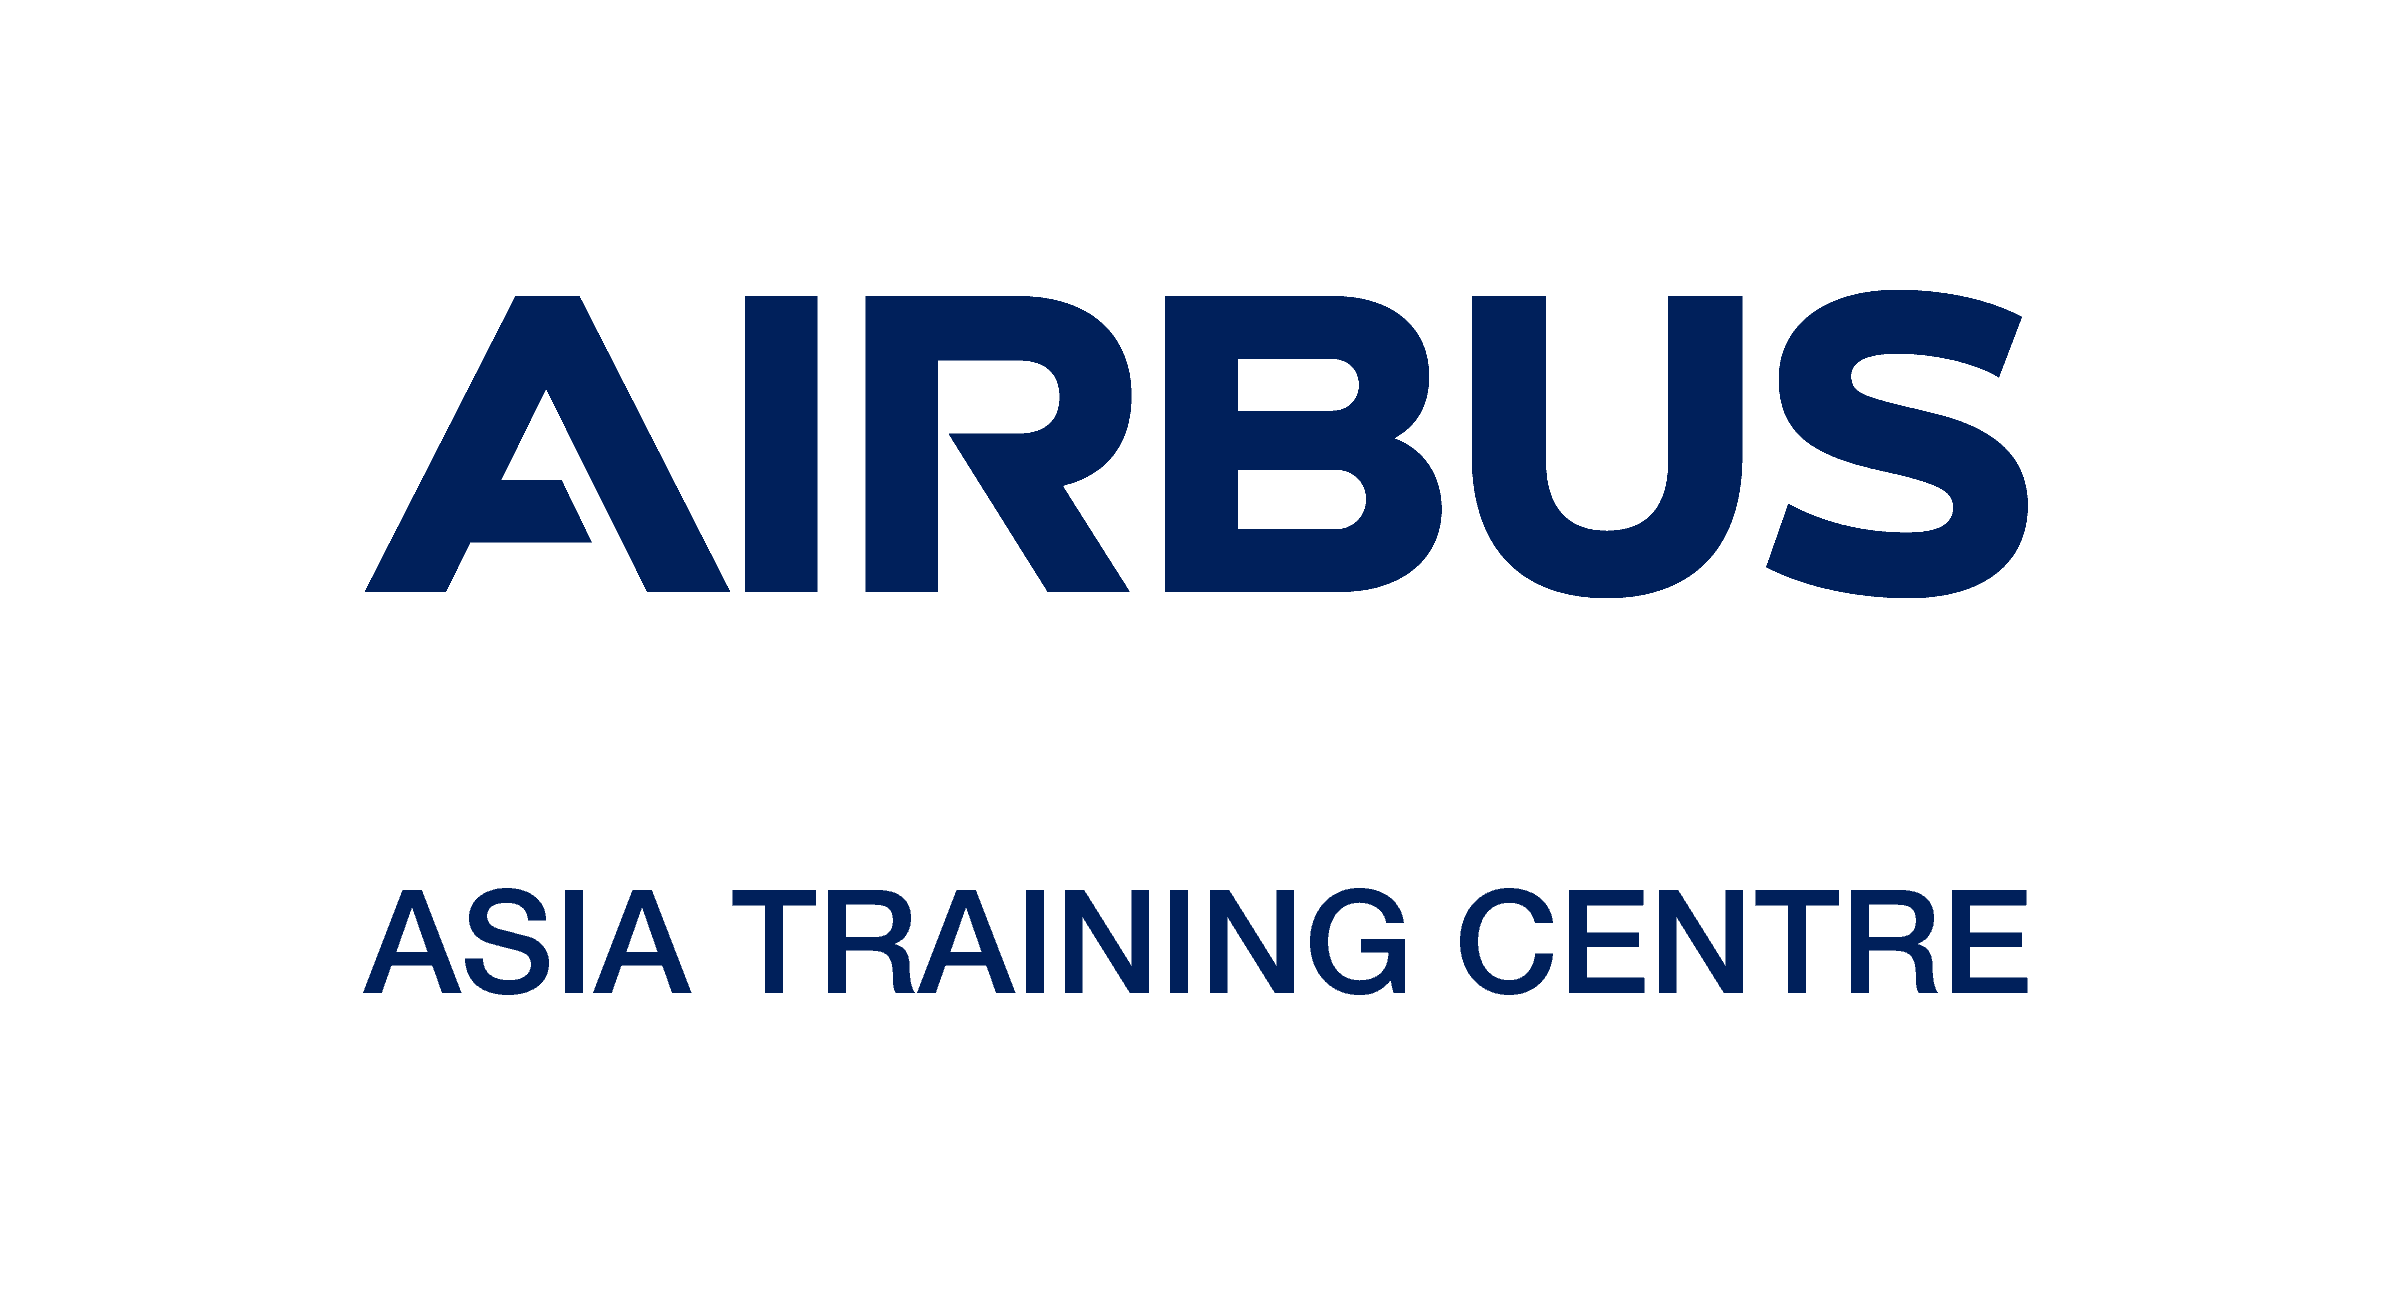 Blue Asia Logo - Airbus Asia Training Centre Pacific Airline Training Summit